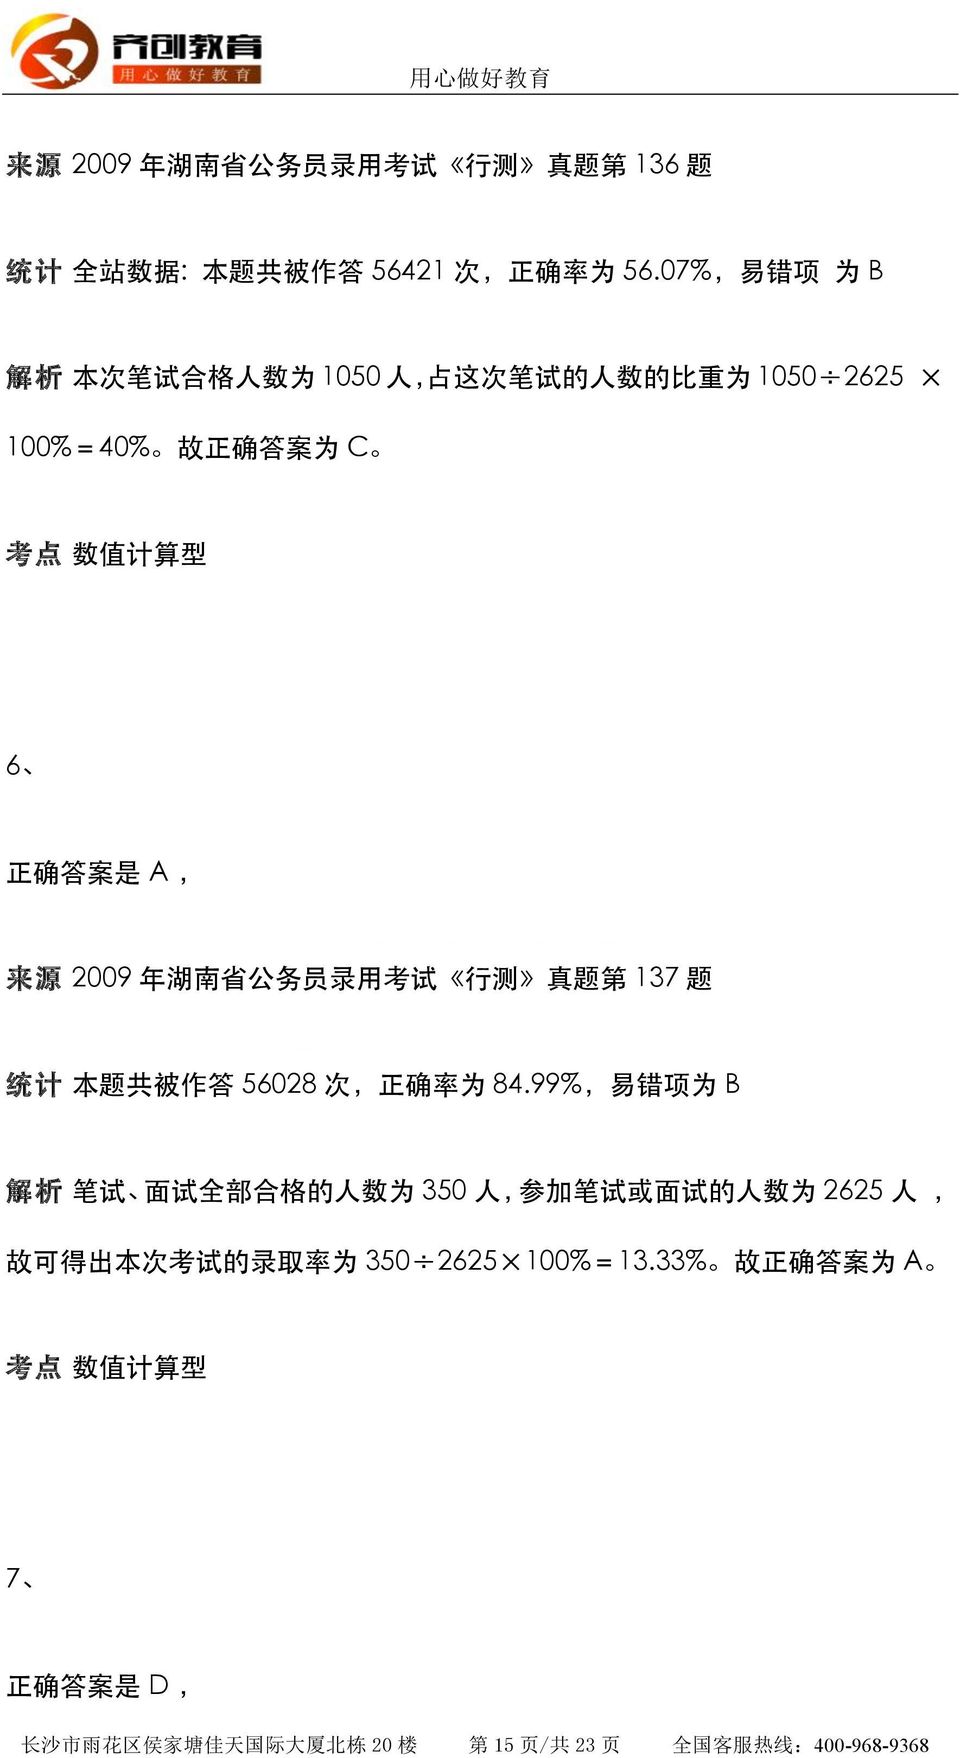 年 湖 南 省 公 务 员 录 用 考 试 行 测 真 题 第 137 题 统 计 本 题 共 被 作 答 56028 次, 正 确 率 为 84.